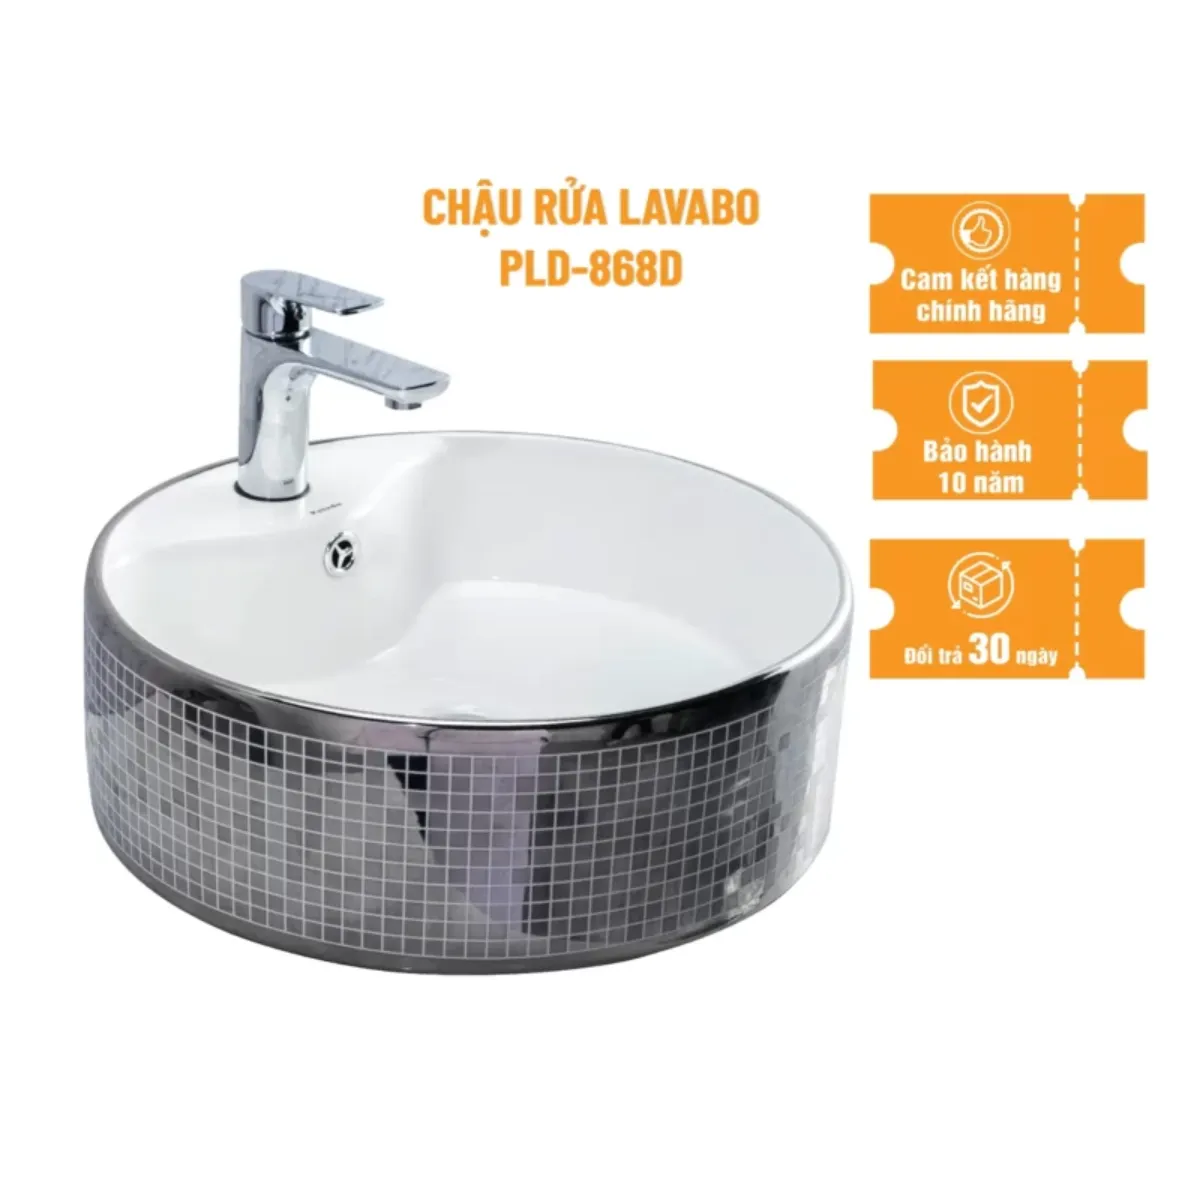 Thông số kỹ thuật cơ bản về bộ chậu rửa lavabo dương bàn Palado PLD868D